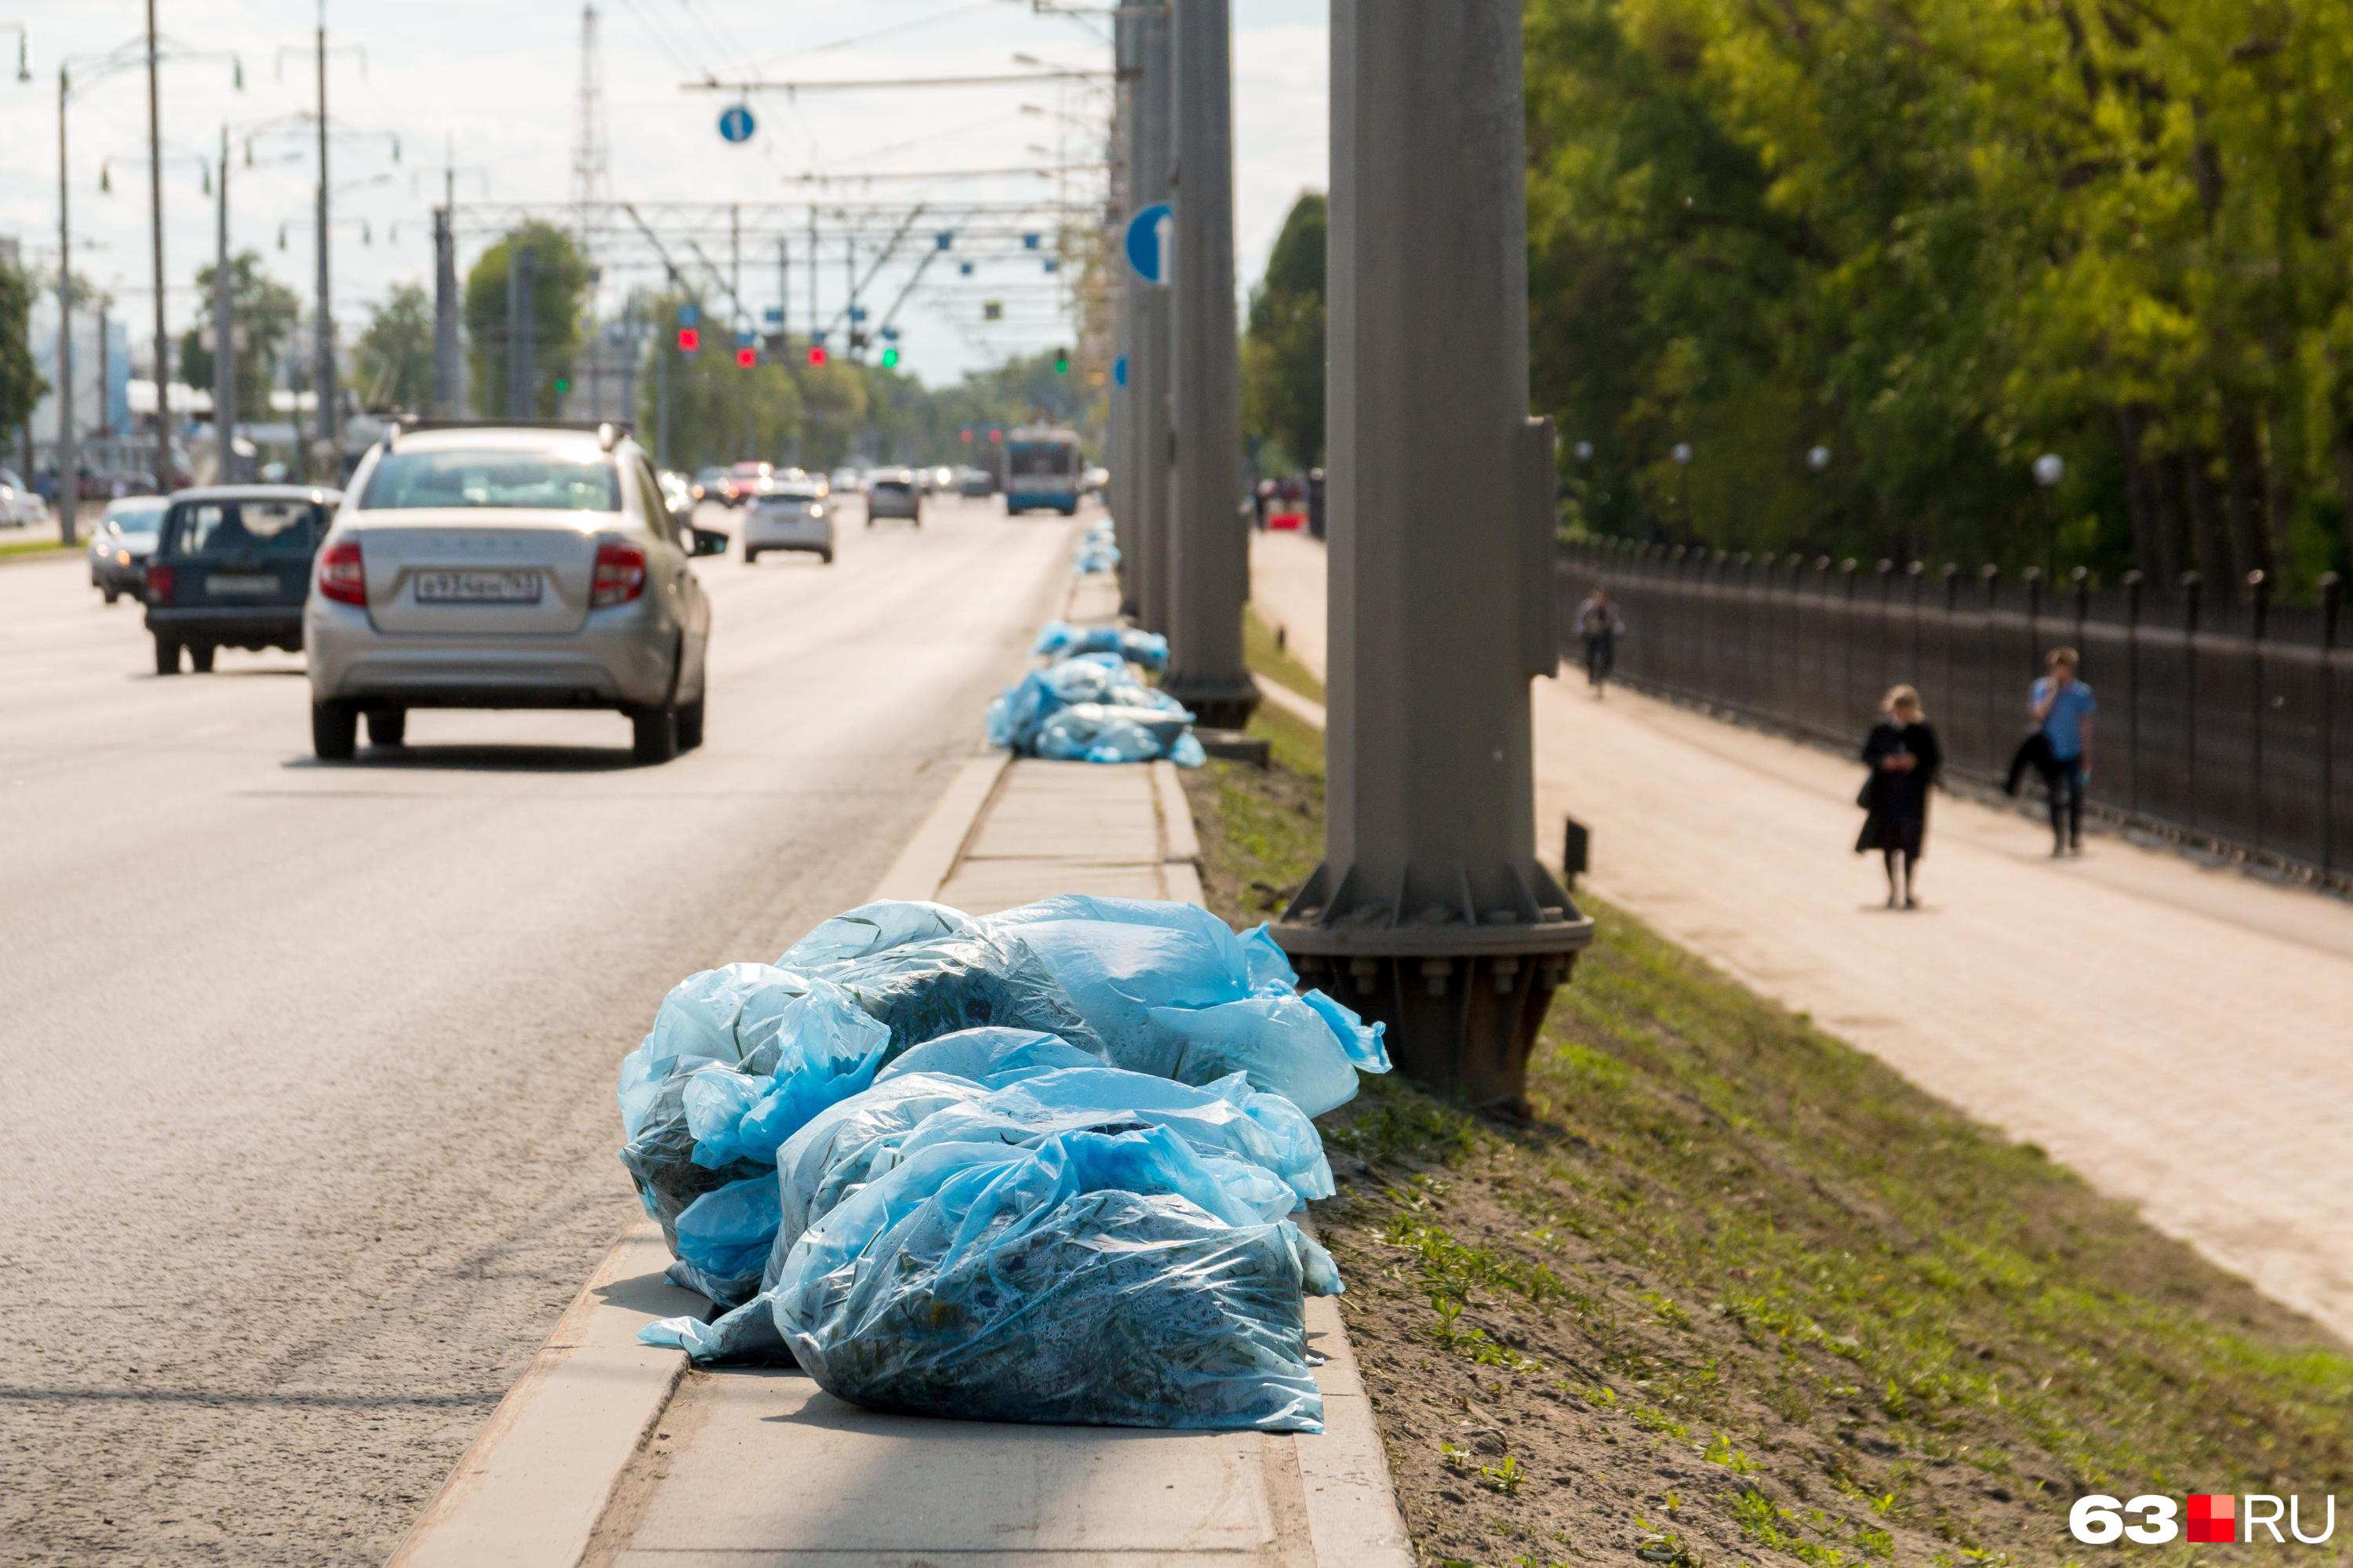 55 КАМАЗов мусора вывезли после субботника в Чите